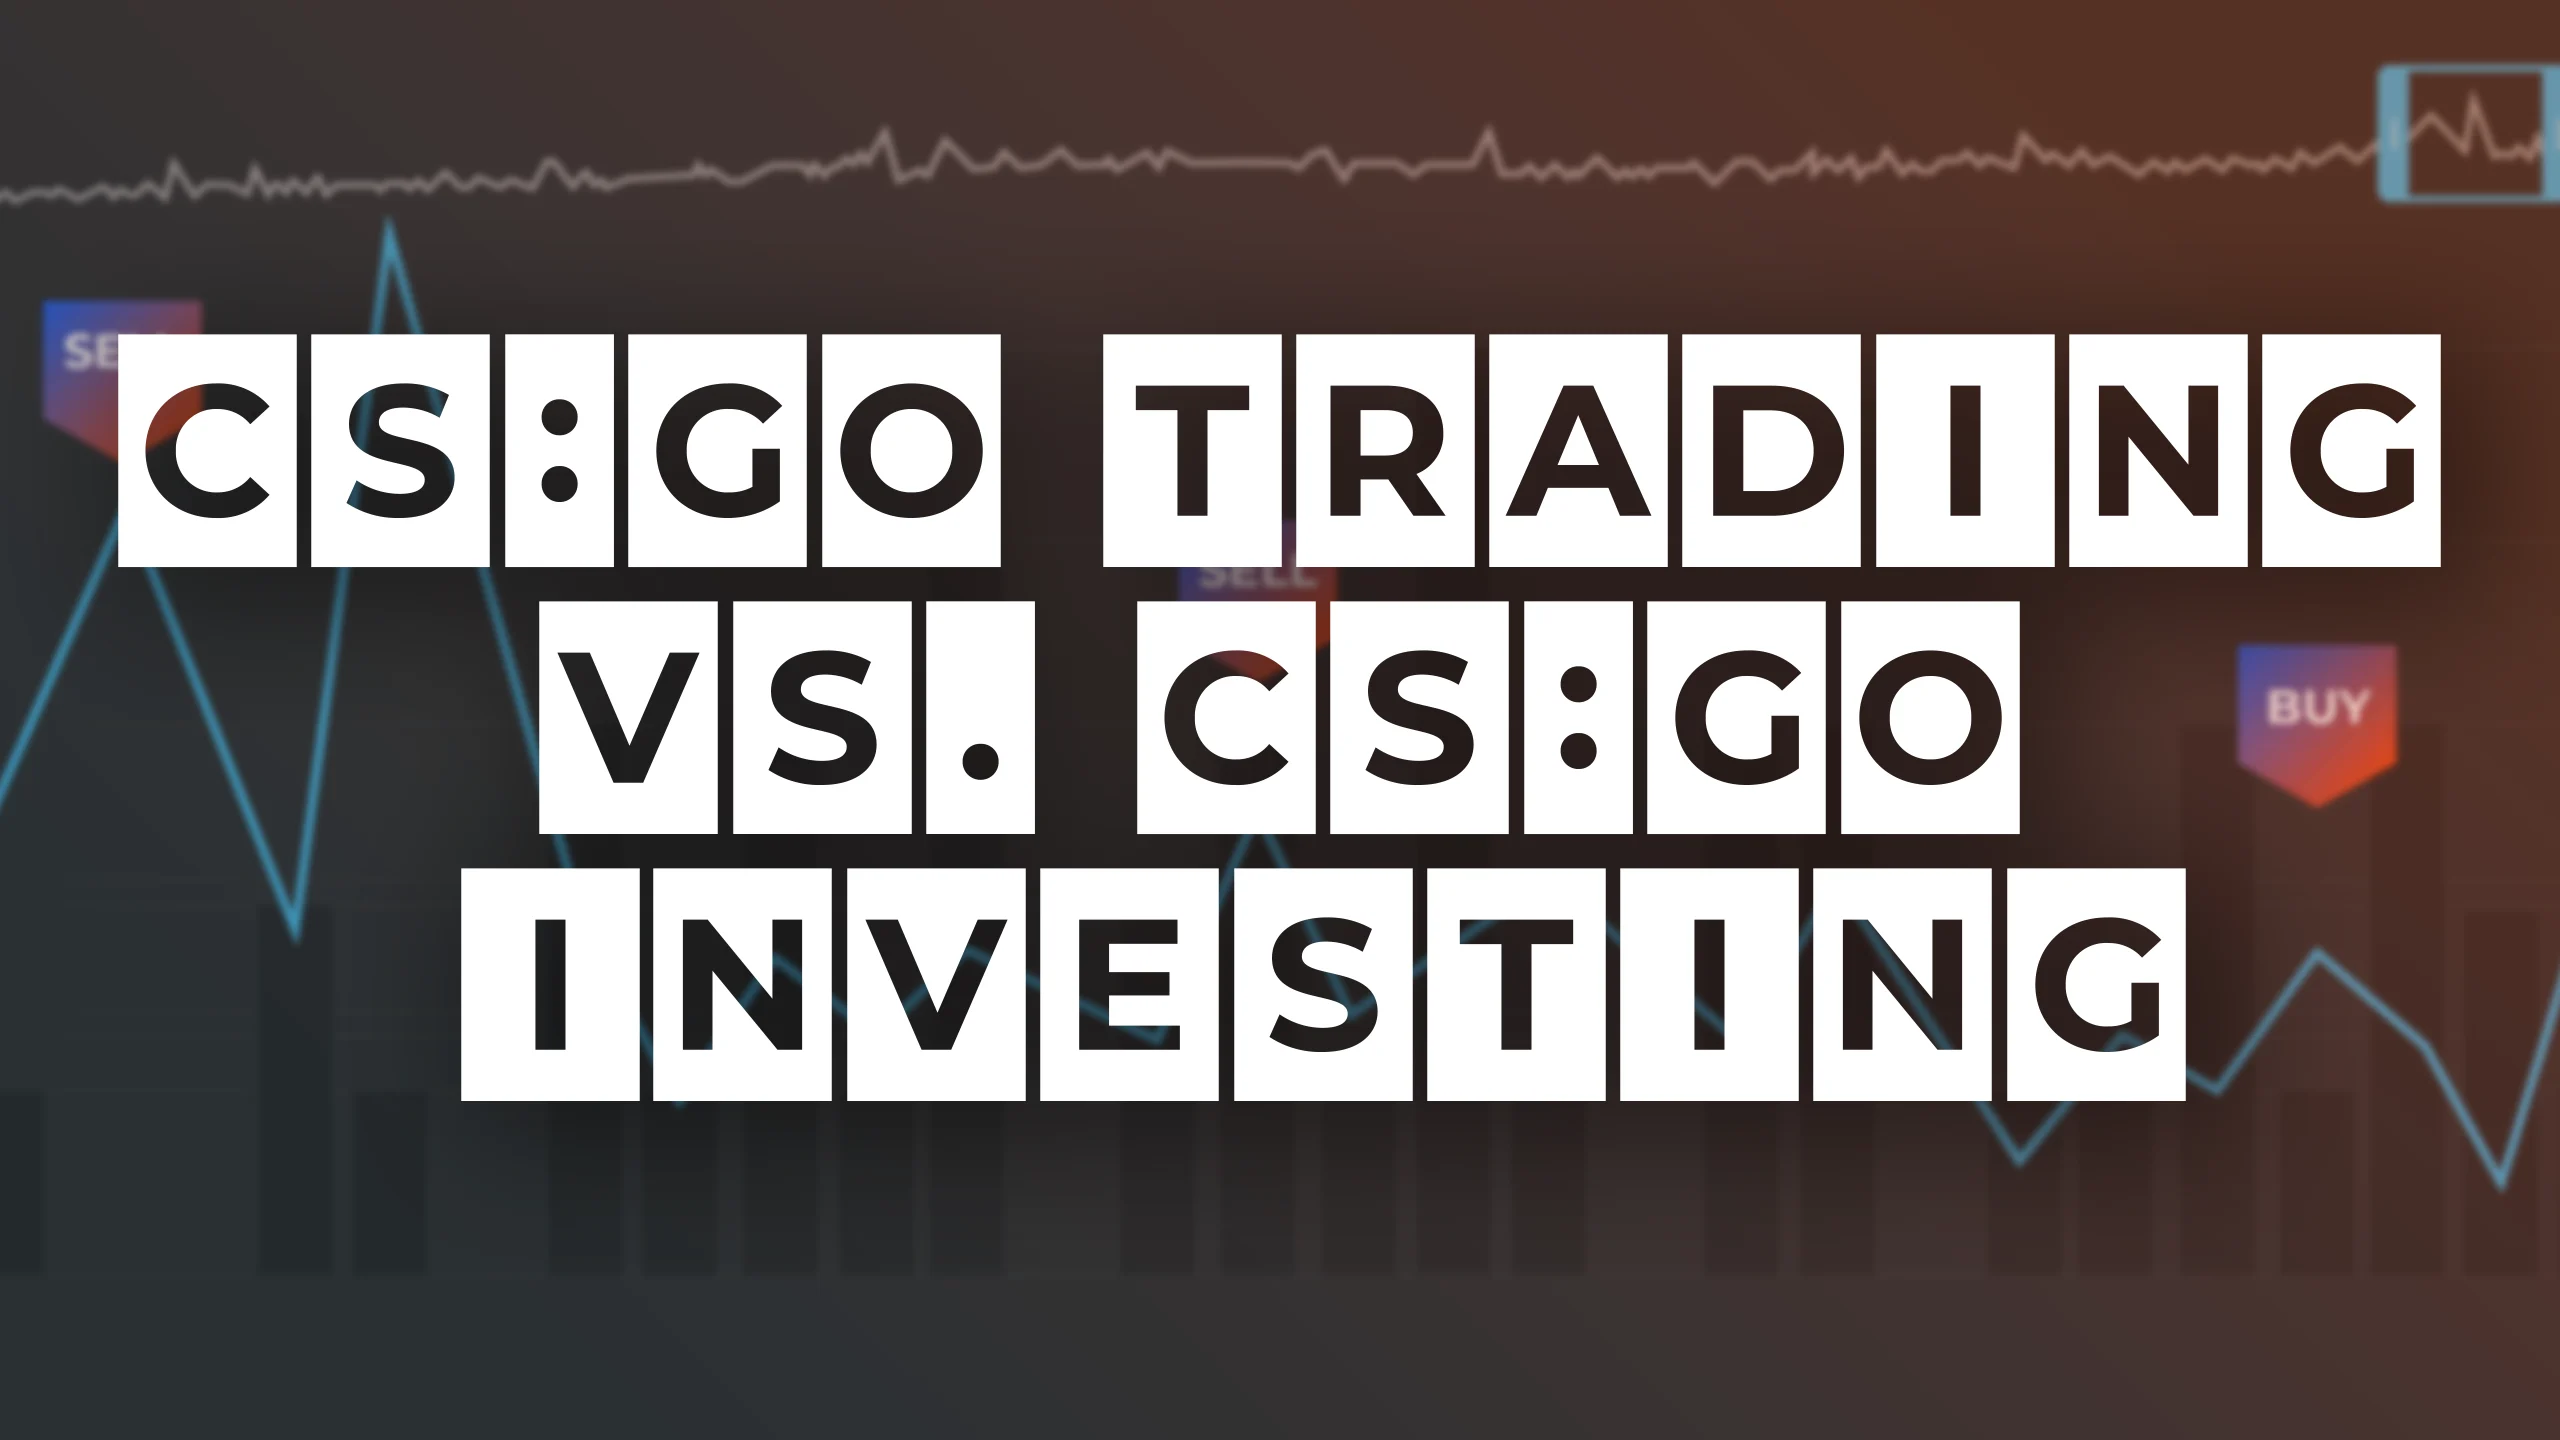 CS:GO Trading vs. CS:GO Investing